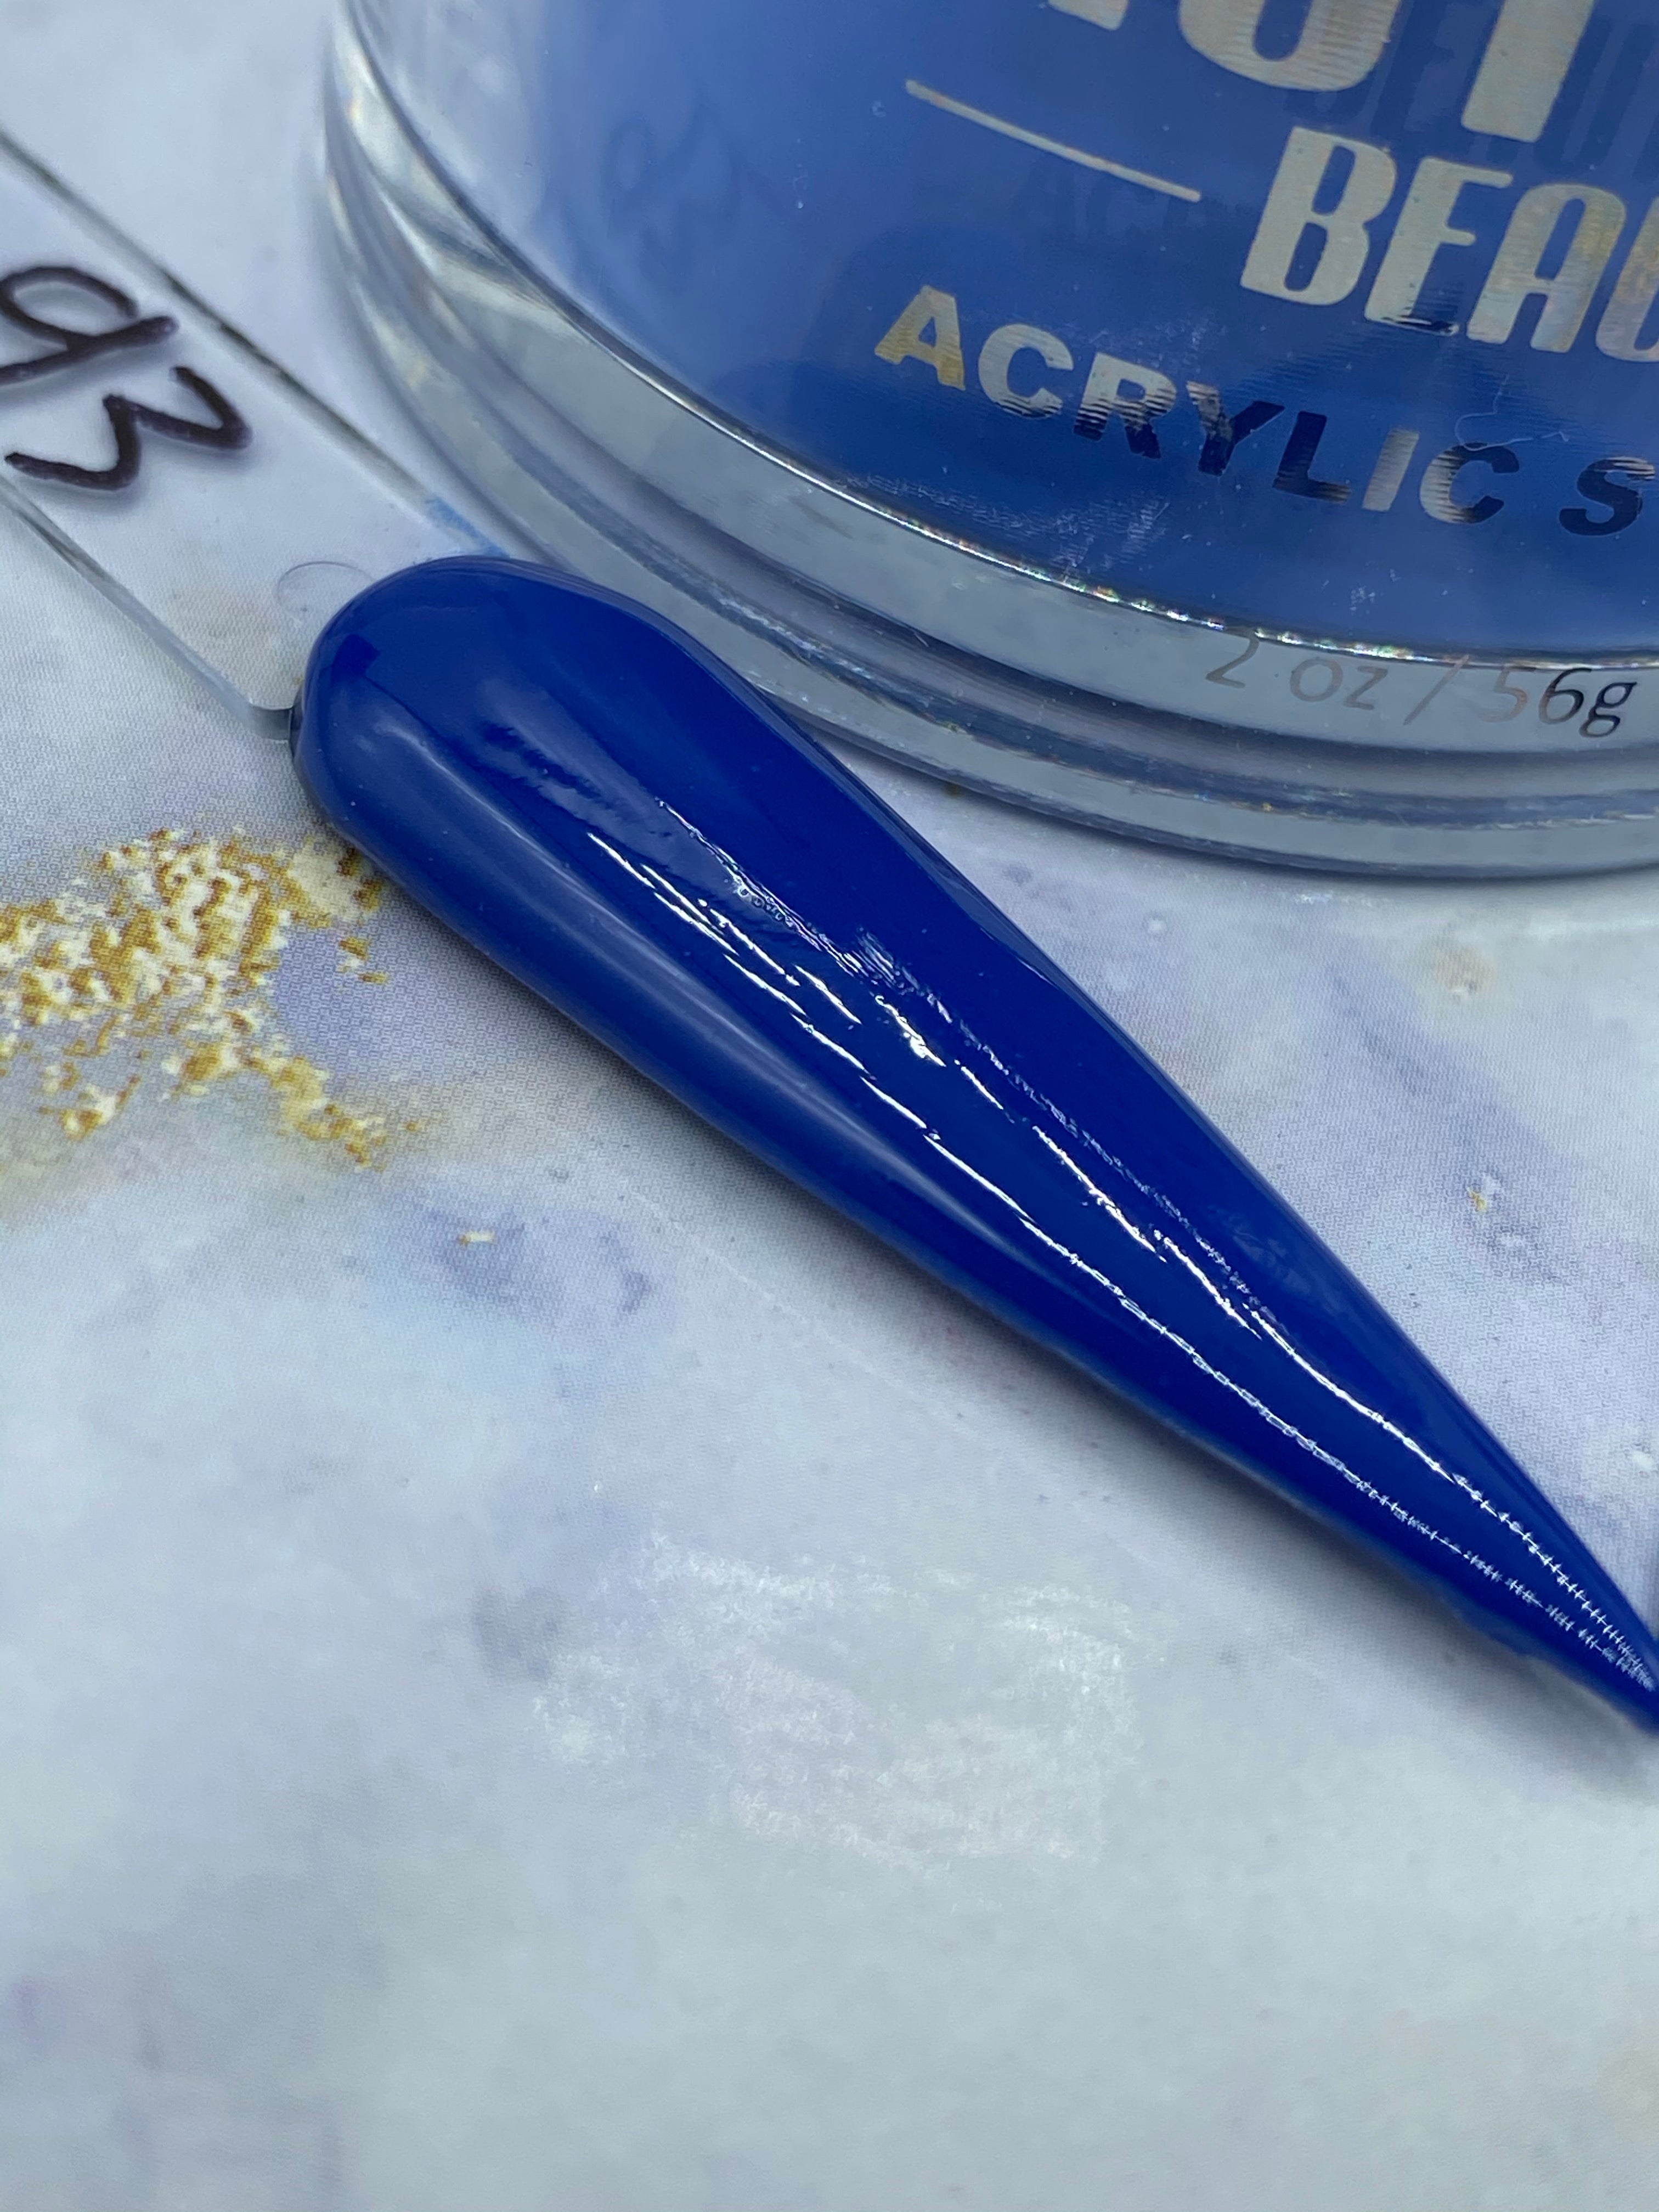 Acrylic Powder - A 93 Drop Every Fear